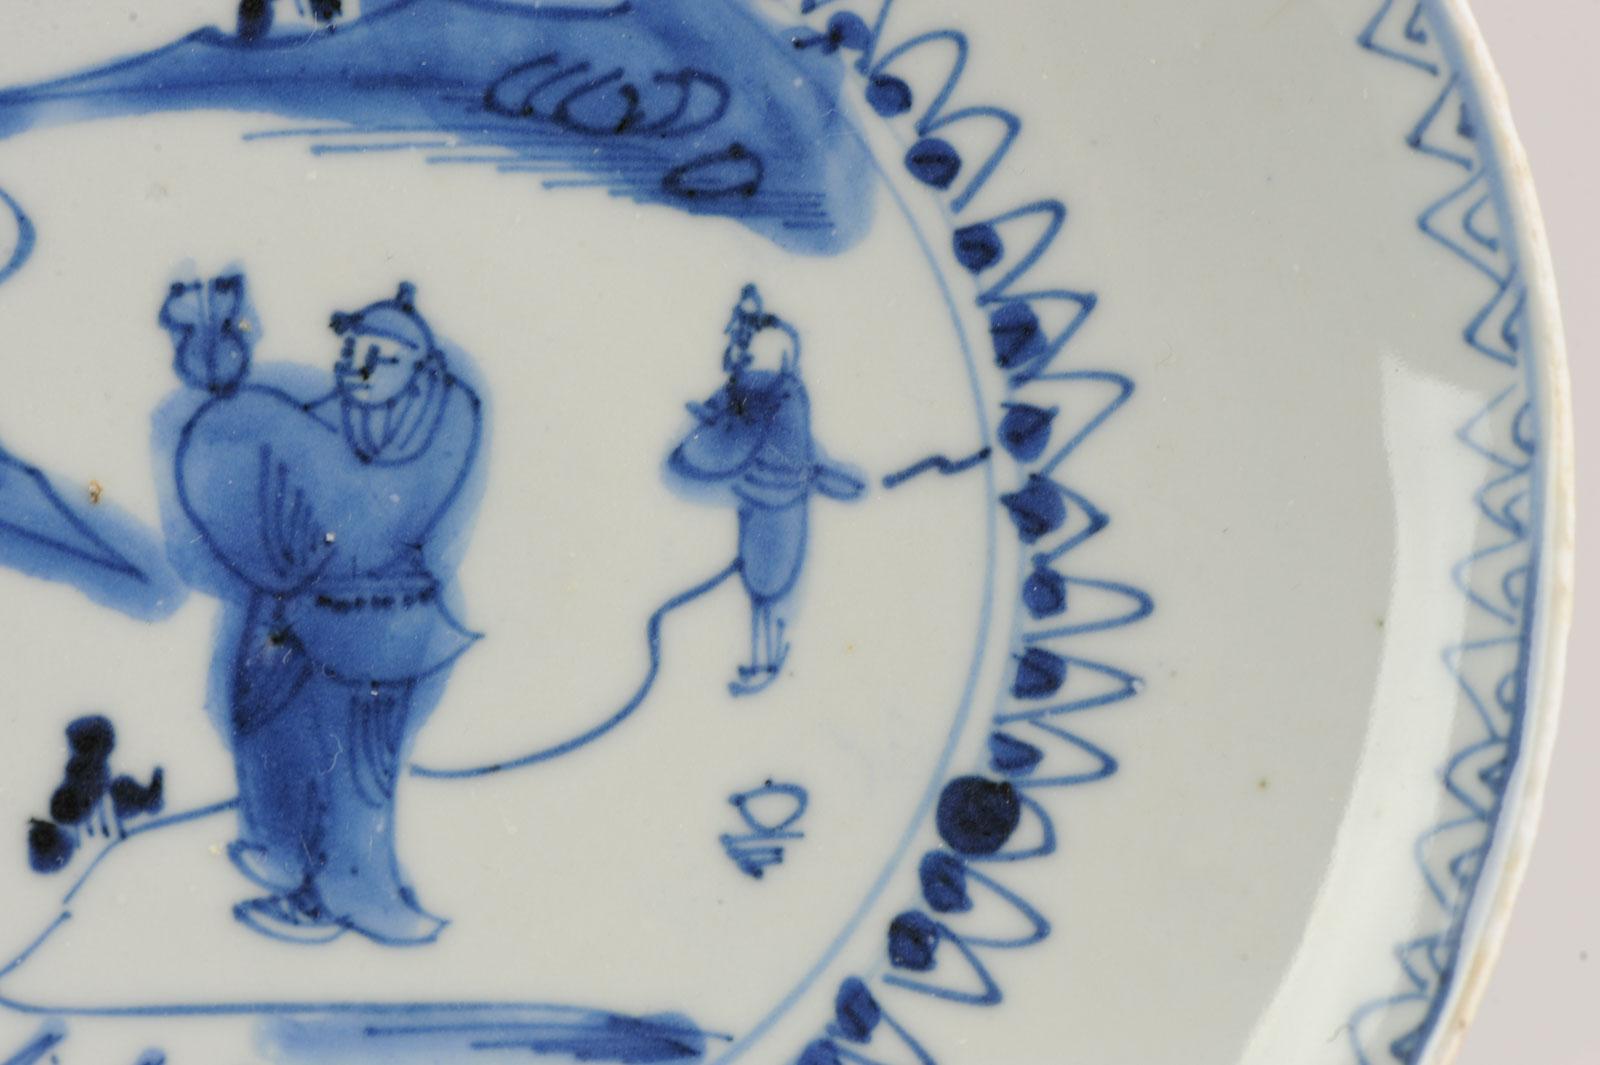 Ein Blau-Weißer Teller der späten Ming-Übergangszeit mit einem schönen und seltenen Dekor

Zusätzliche Informationen:
MATERIAL: Porzellan & Töpferei
Herkunftsregion: China
Zeitraum: 17. Jahrhundert Übergangsphase (1620 - 1661)
Alter: vor